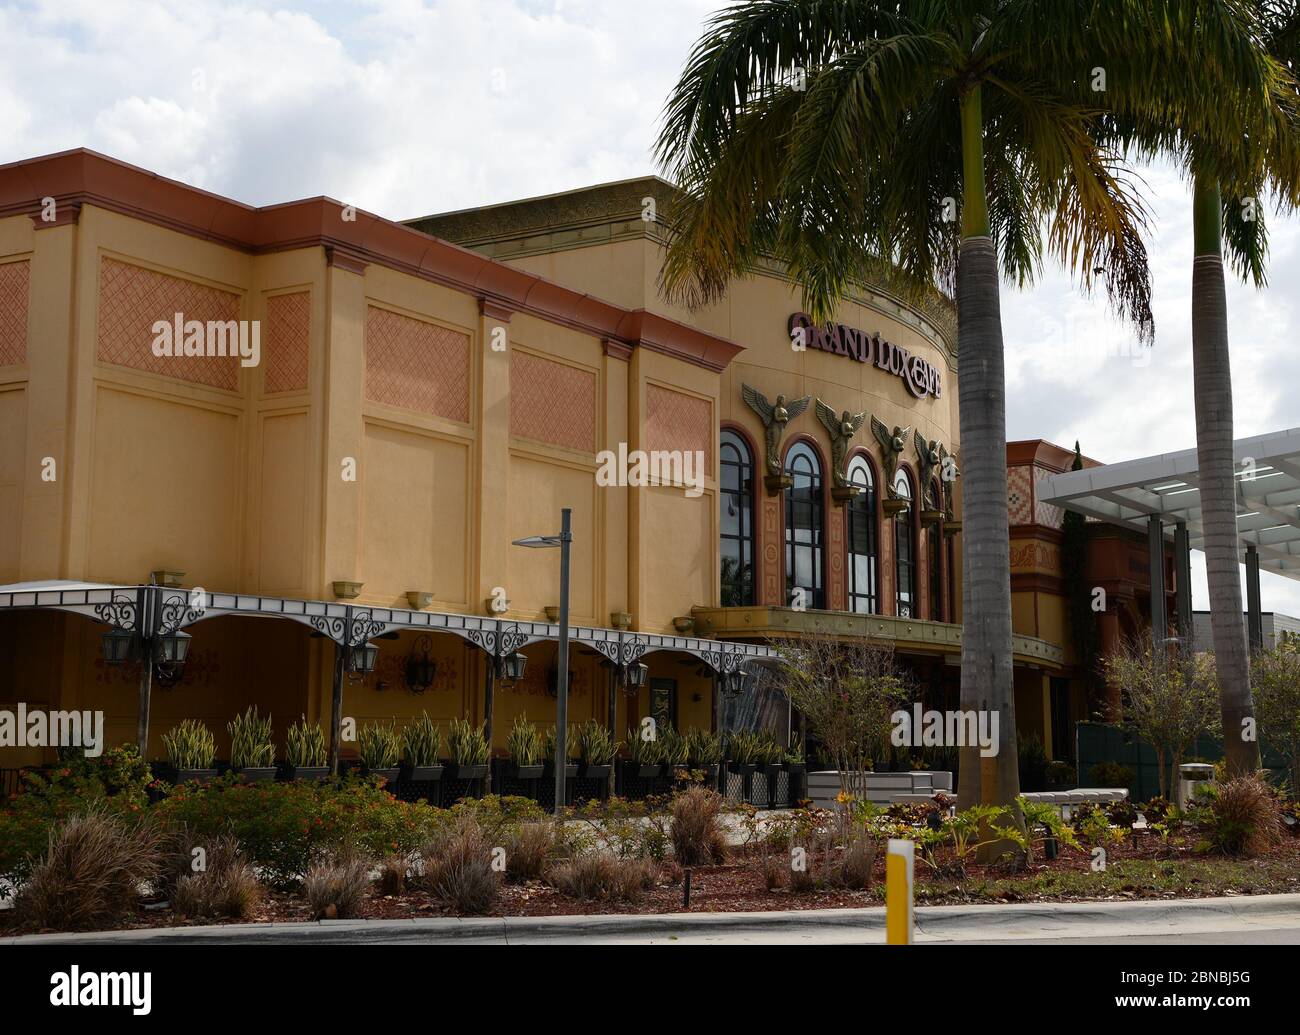 BOCA RATON, FL - MAYO 13: Una vista general del centro comercial Boca Raton  Town Center Mall como restaurantes reabiertos de acuerdo con la fase 1 del  Condado de Palm Beach reapertura